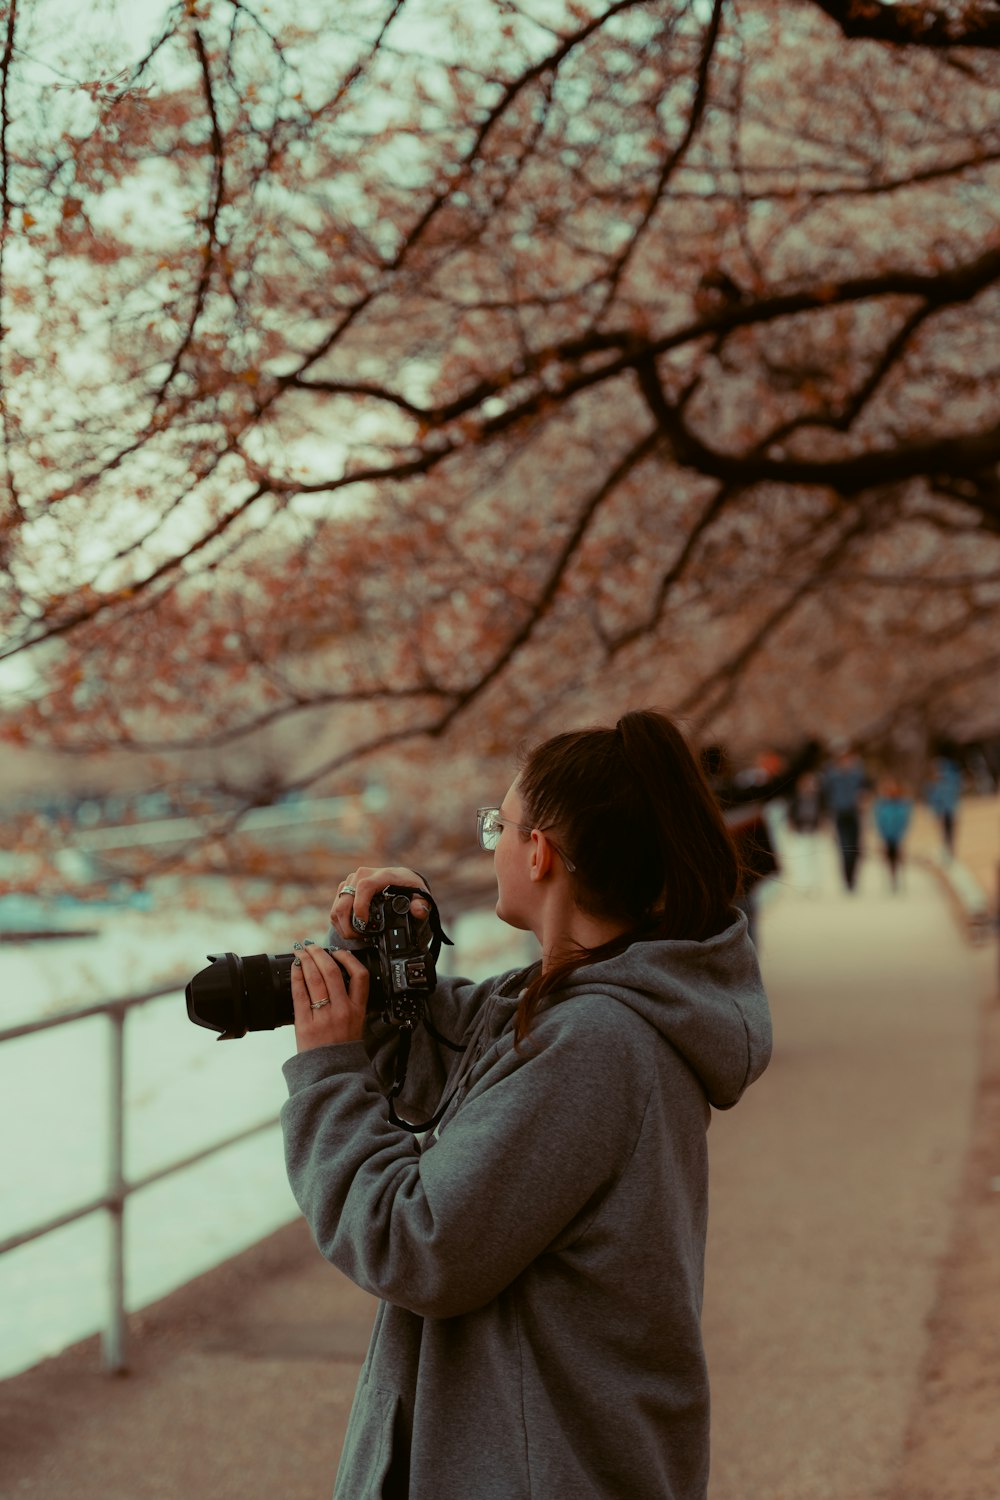 Eine Frau fotografiert einen Baum mit einer Kamera